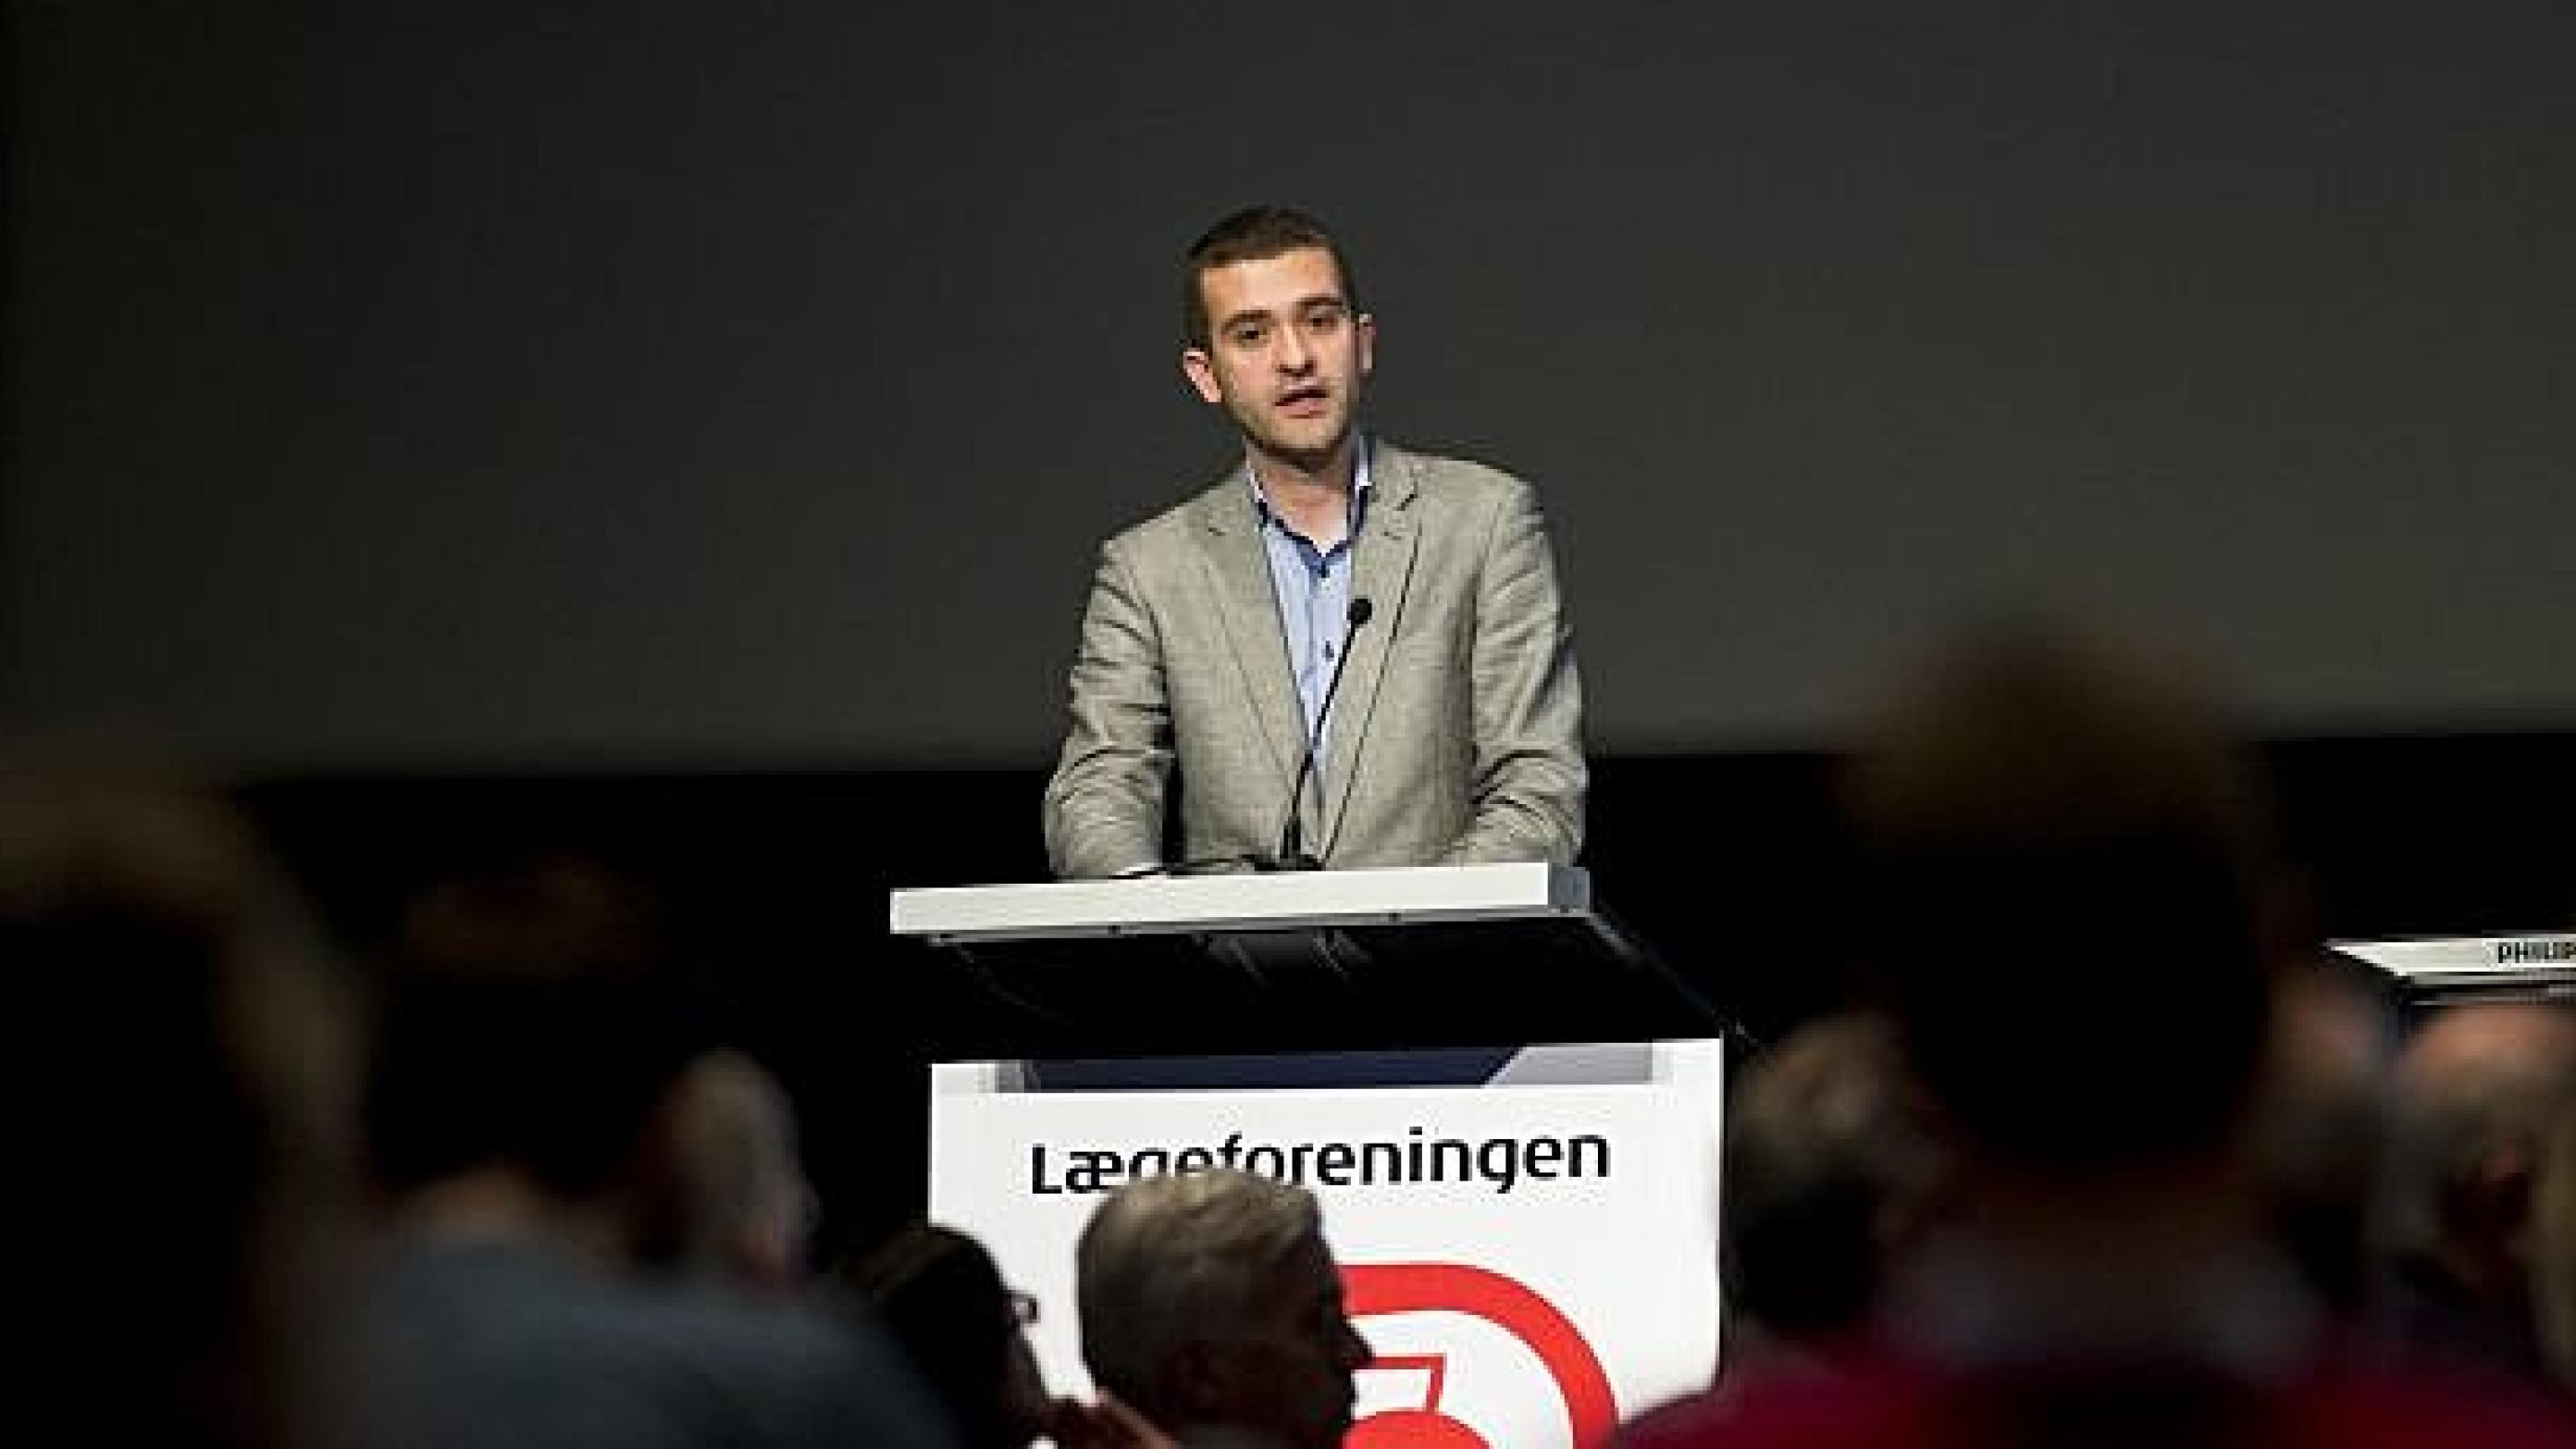 Andreas Rudkjøbing er formand for Lægeforeningen. Foto: Palle Peter Skov